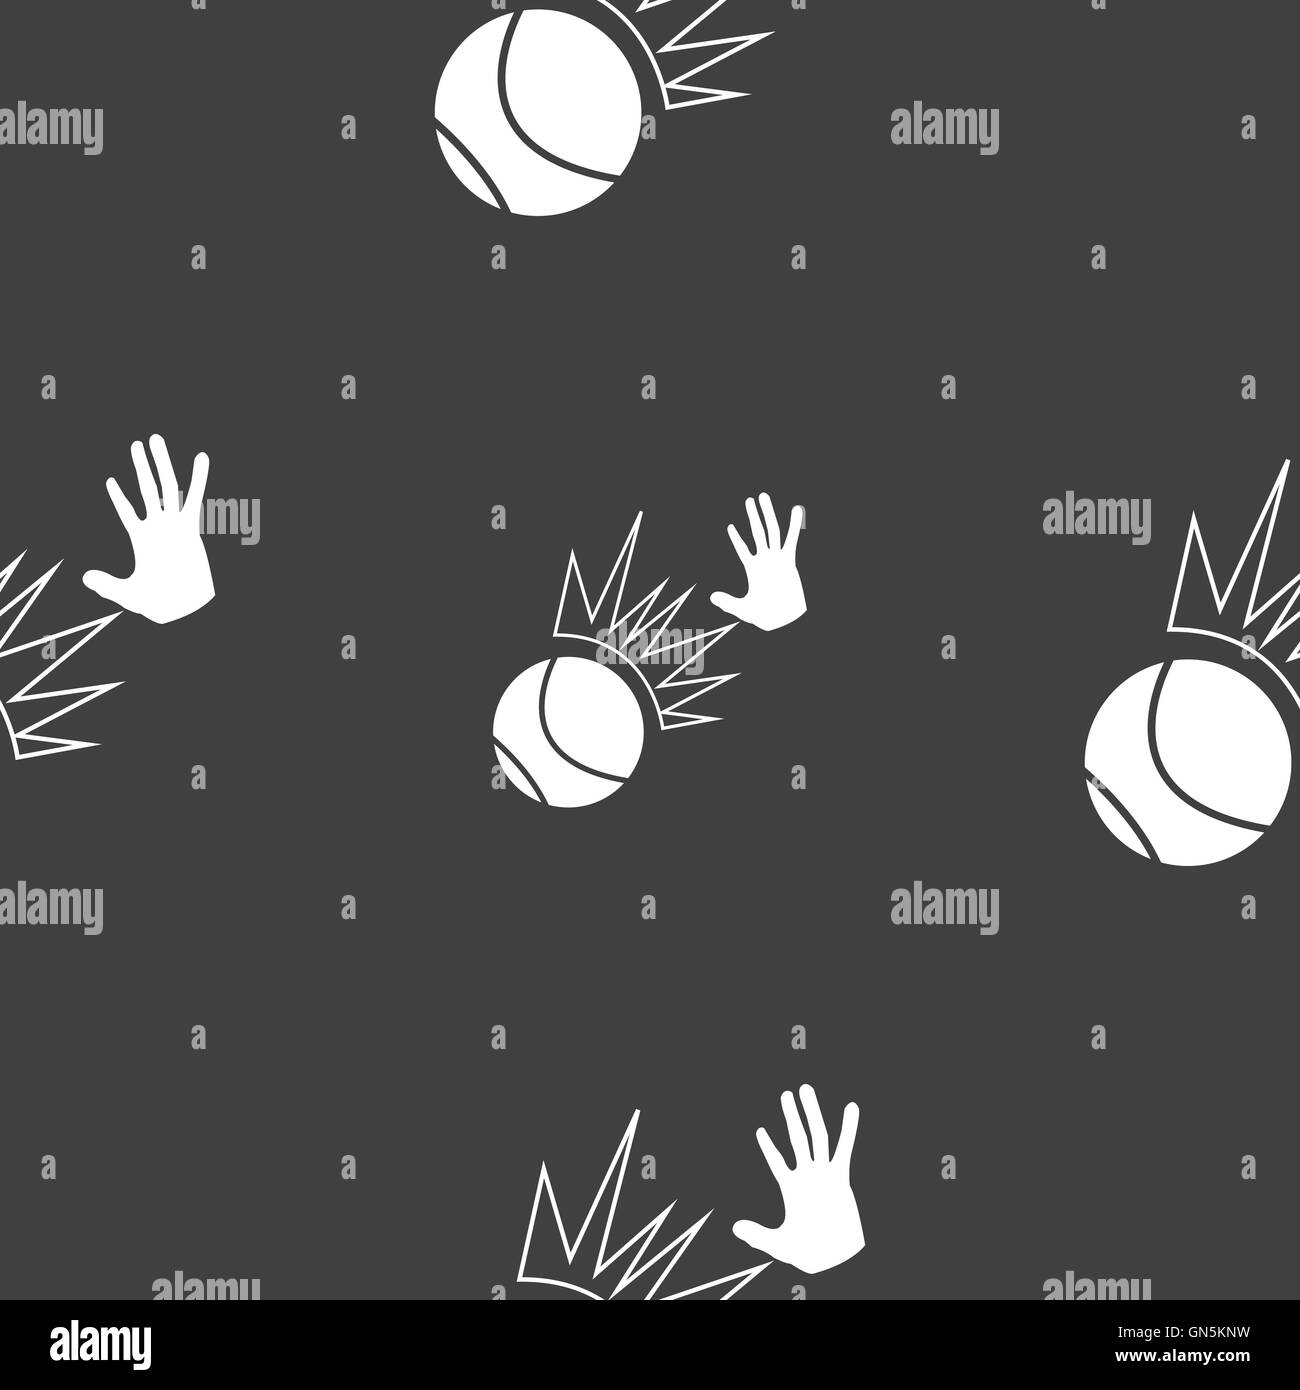 Basketball-Ikone Zeichen. Nahtlose Muster auf einem grauen Hintergrund. Vektor Stock Vektor